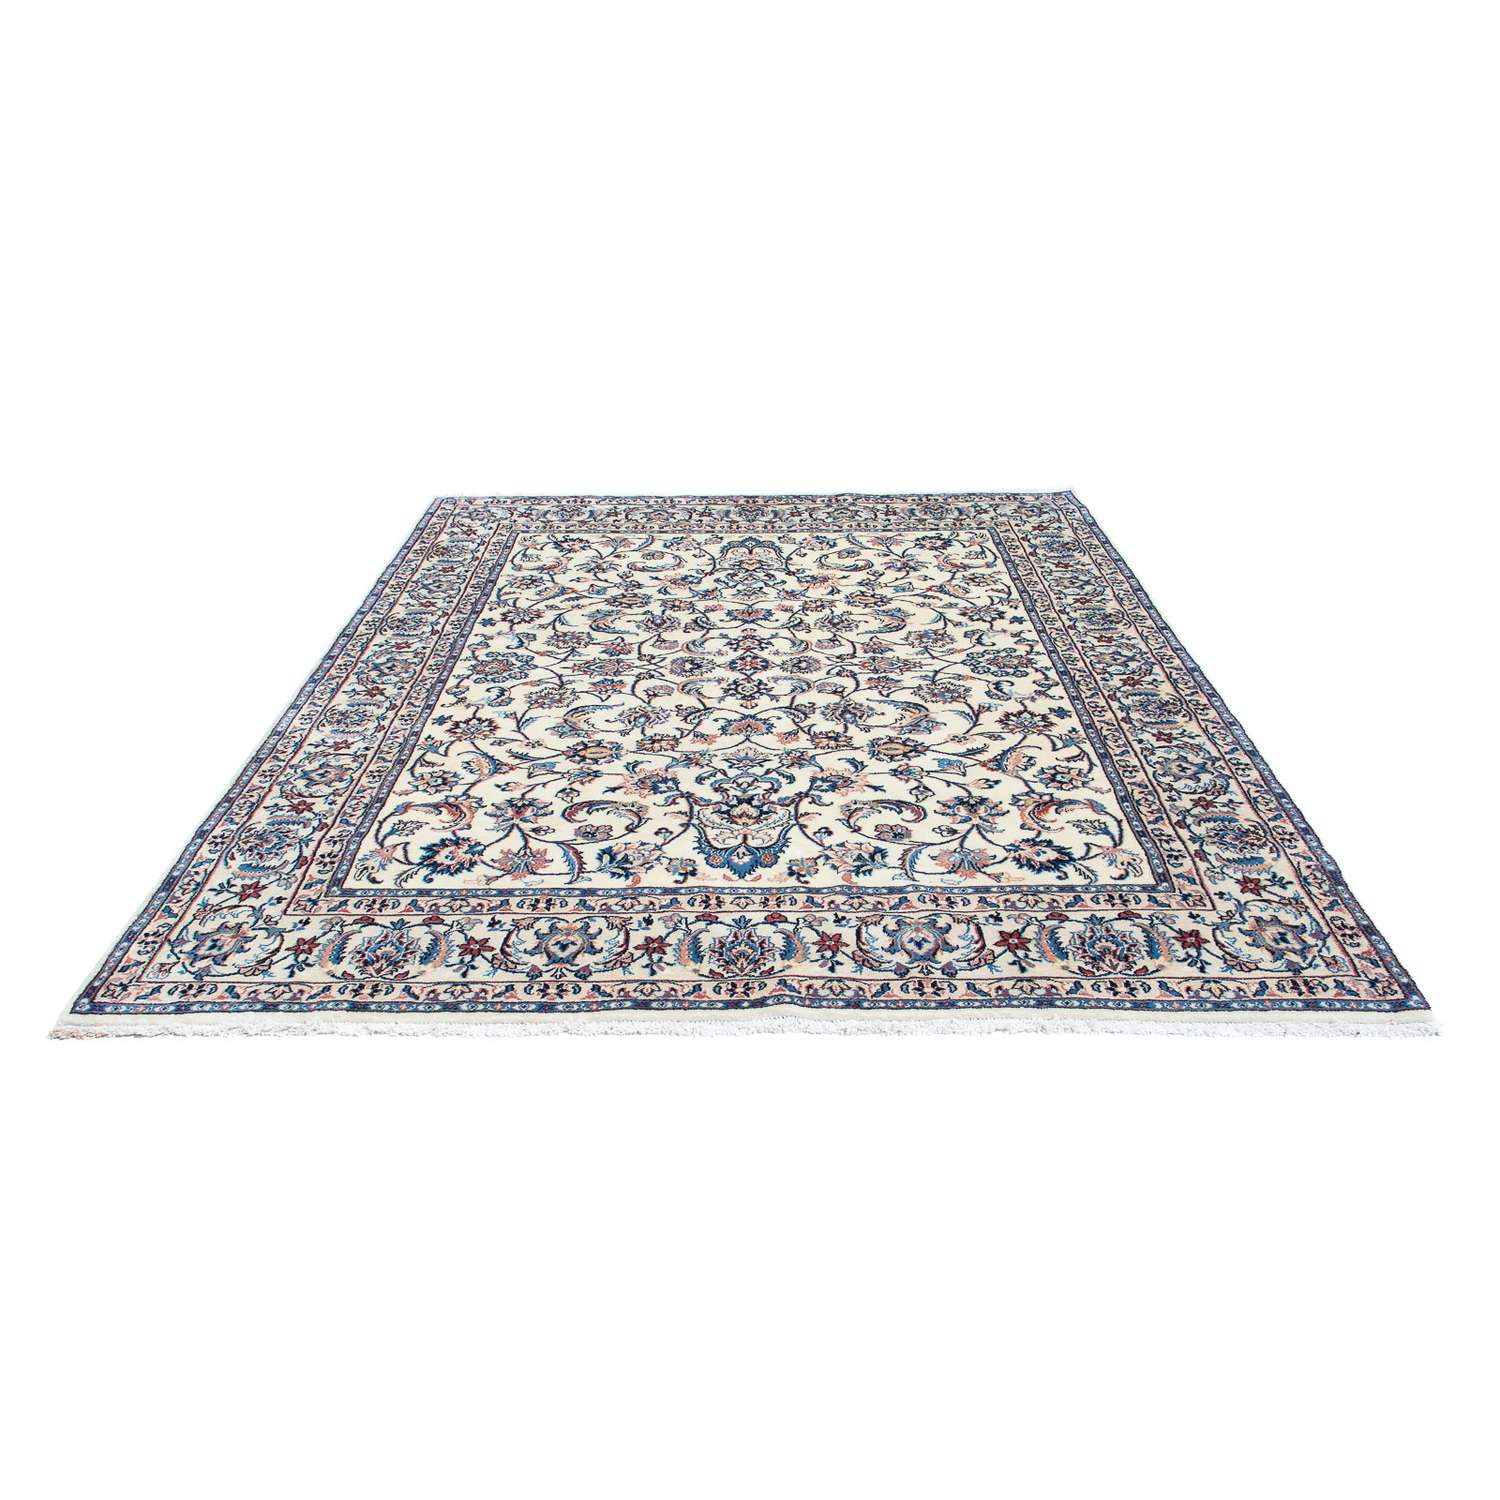 Persisk teppe - klassisk - 256 x 200 cm - beige